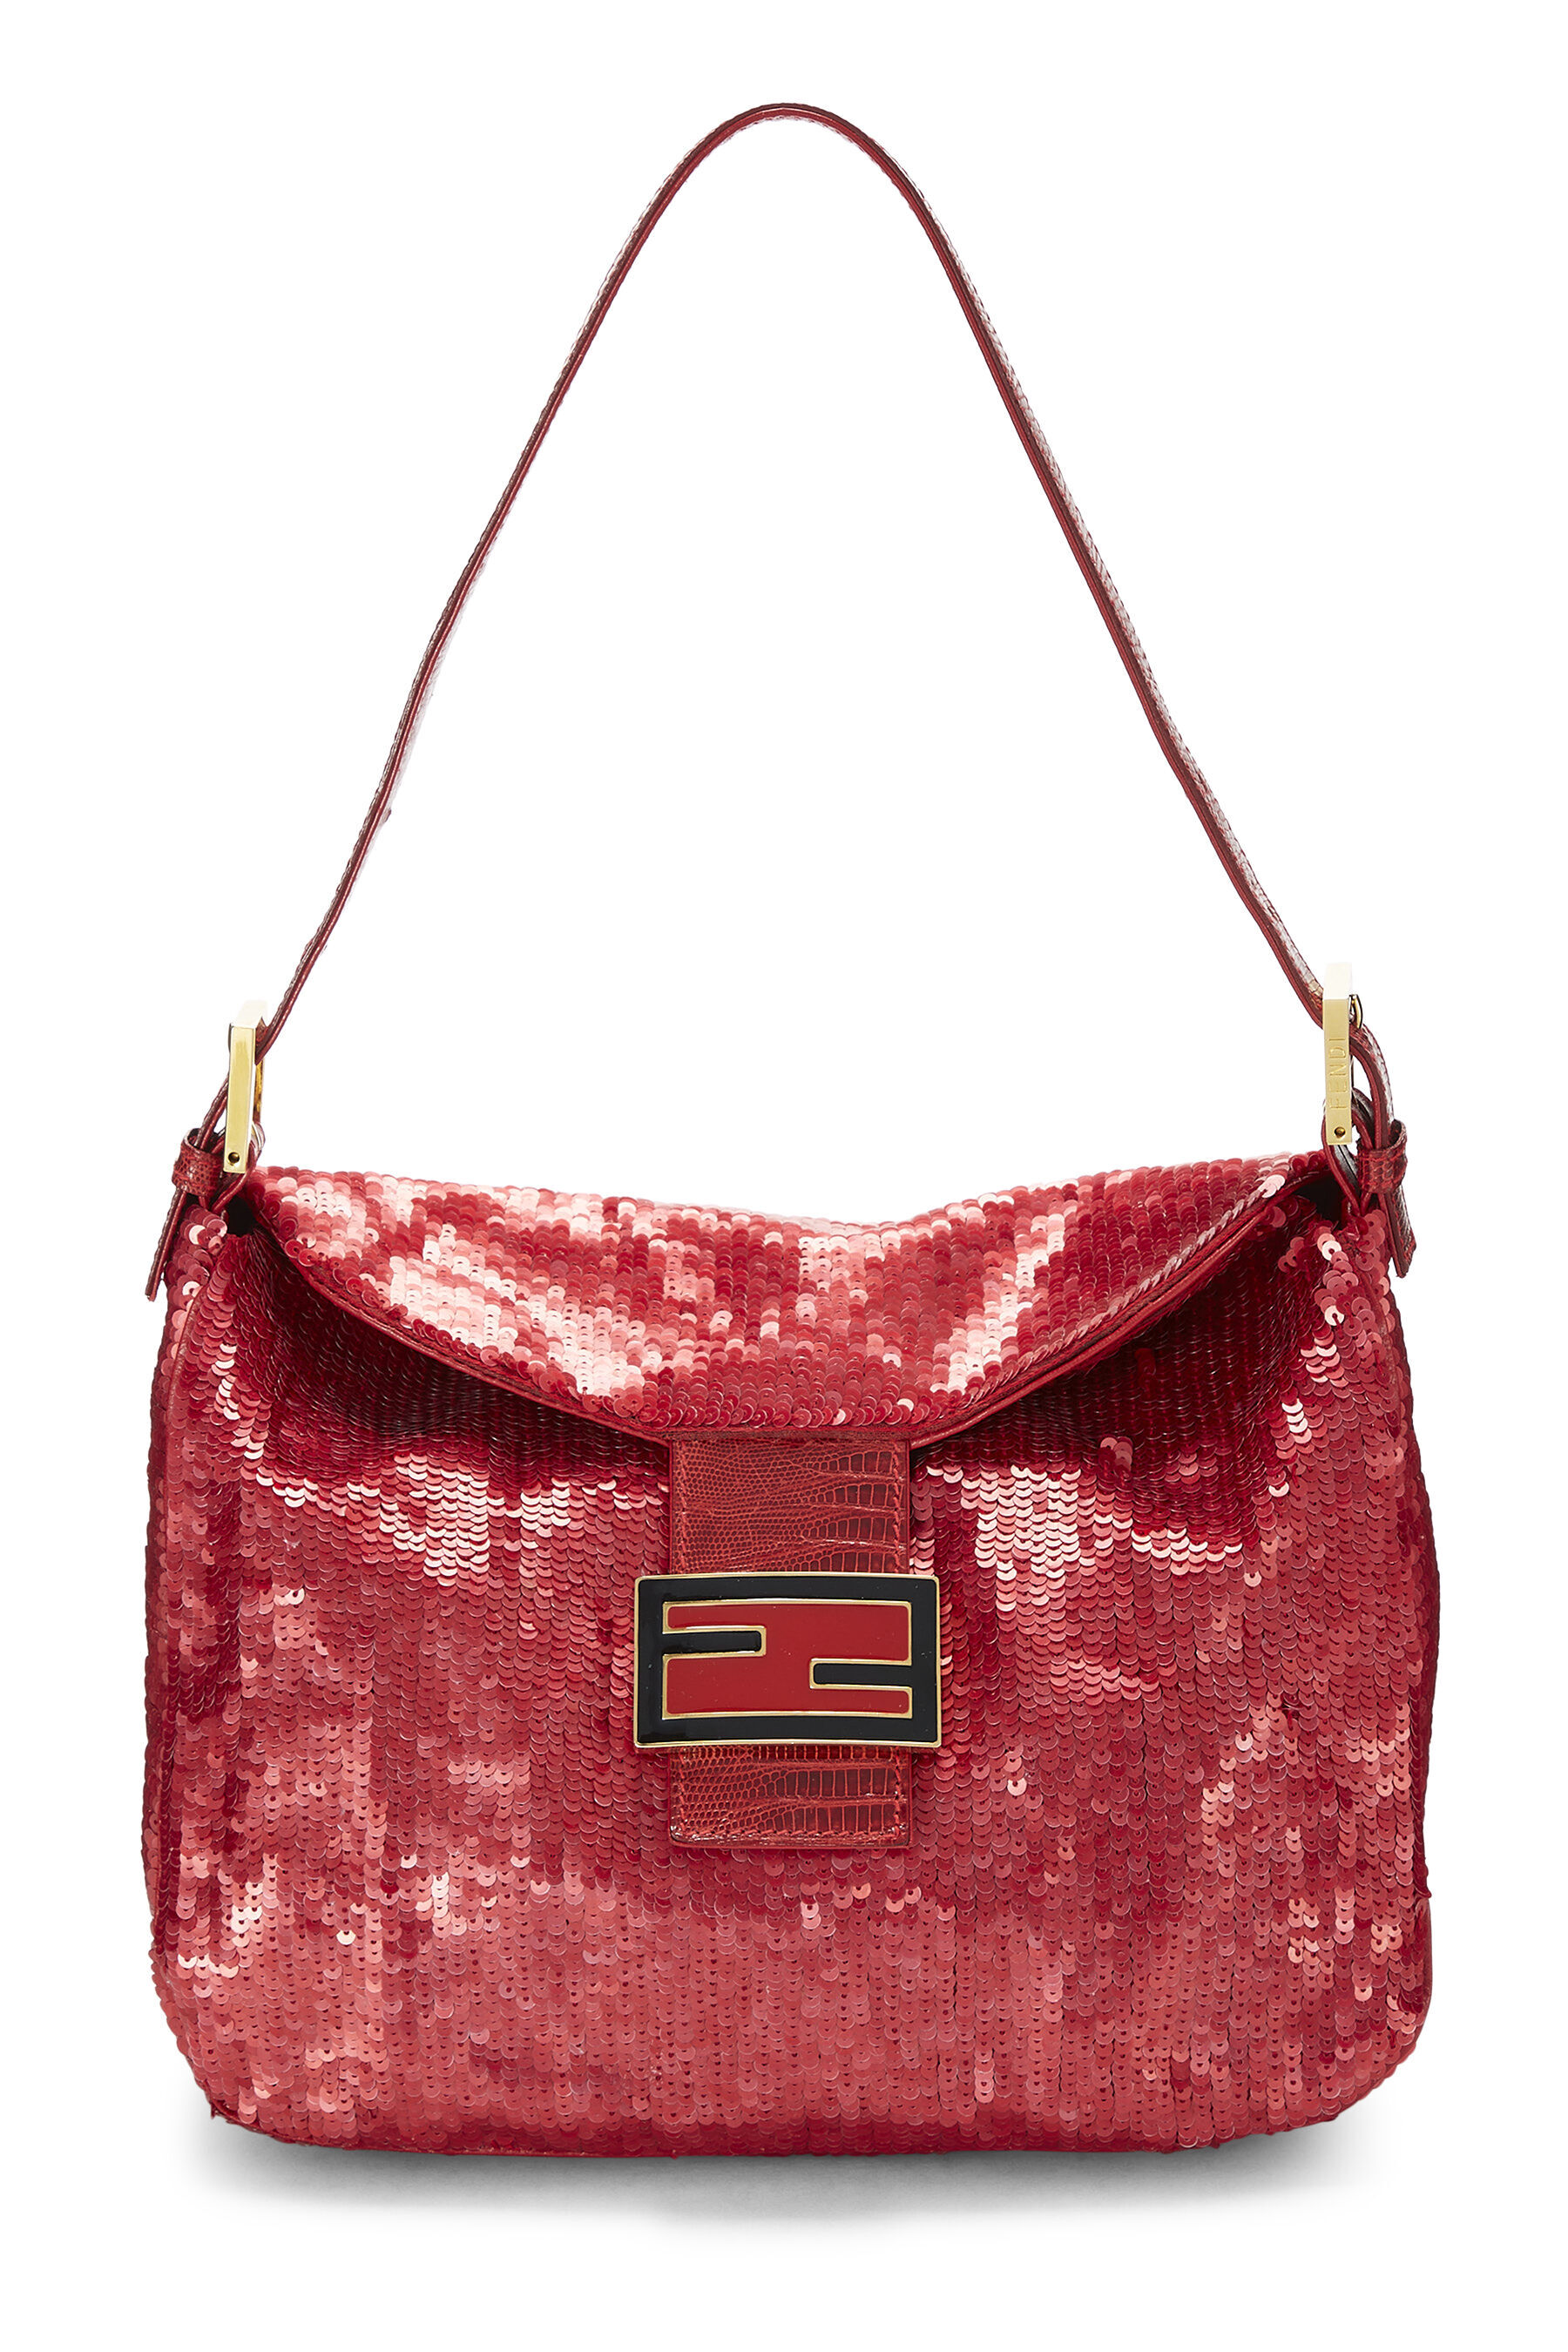 Fendi Red Shoulder Bags | Mercari